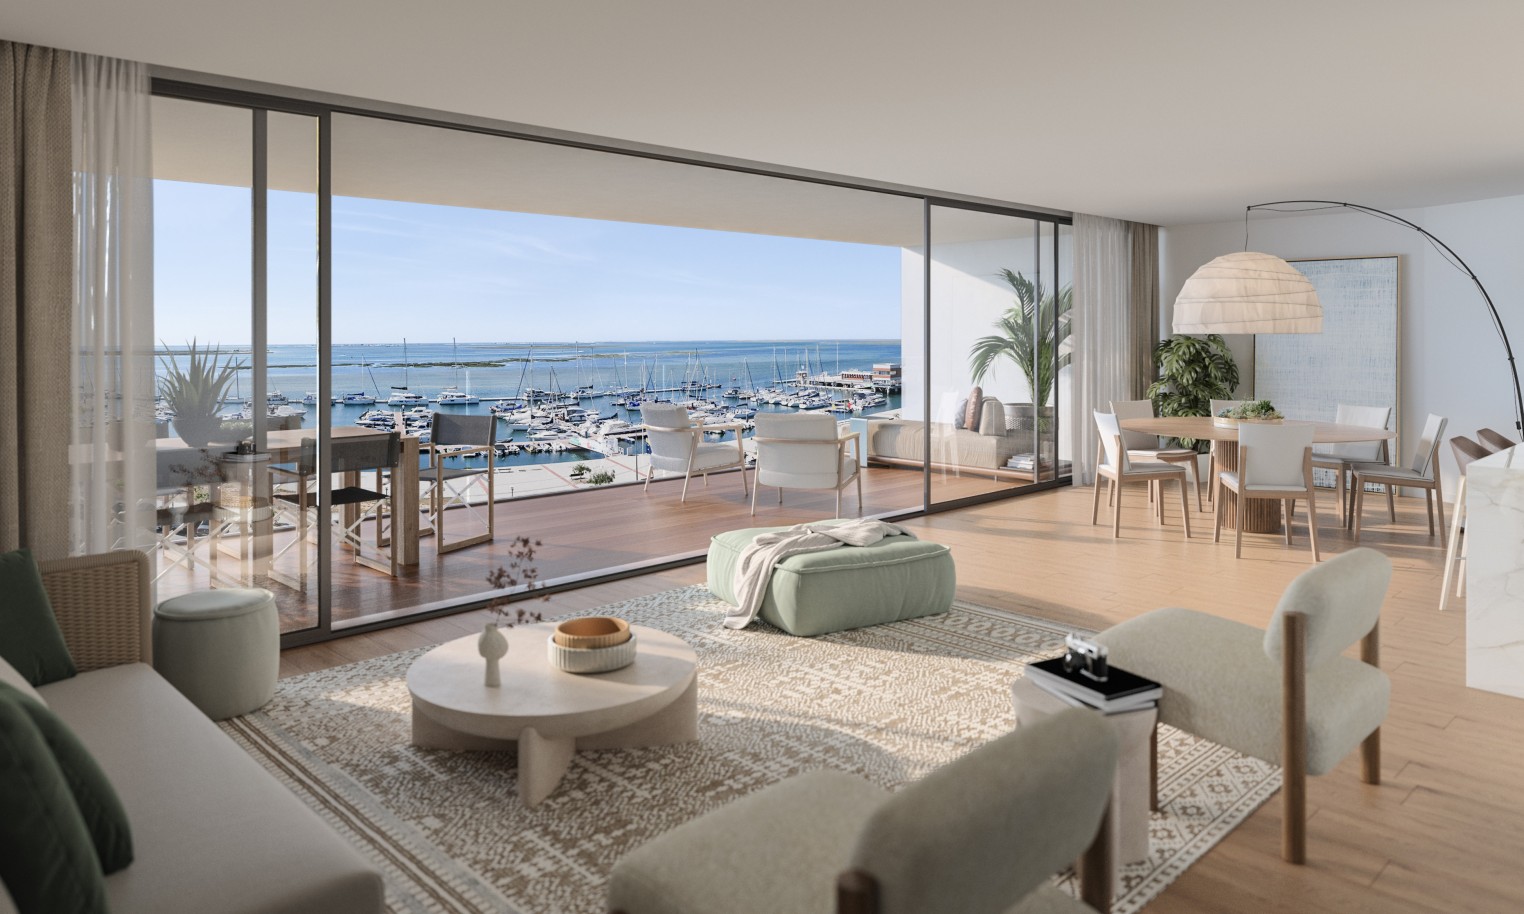 Appartements neufs avec vue sur mer, 1, 2 & 3 chambres, à vendre à Olhão, Algarve_244355